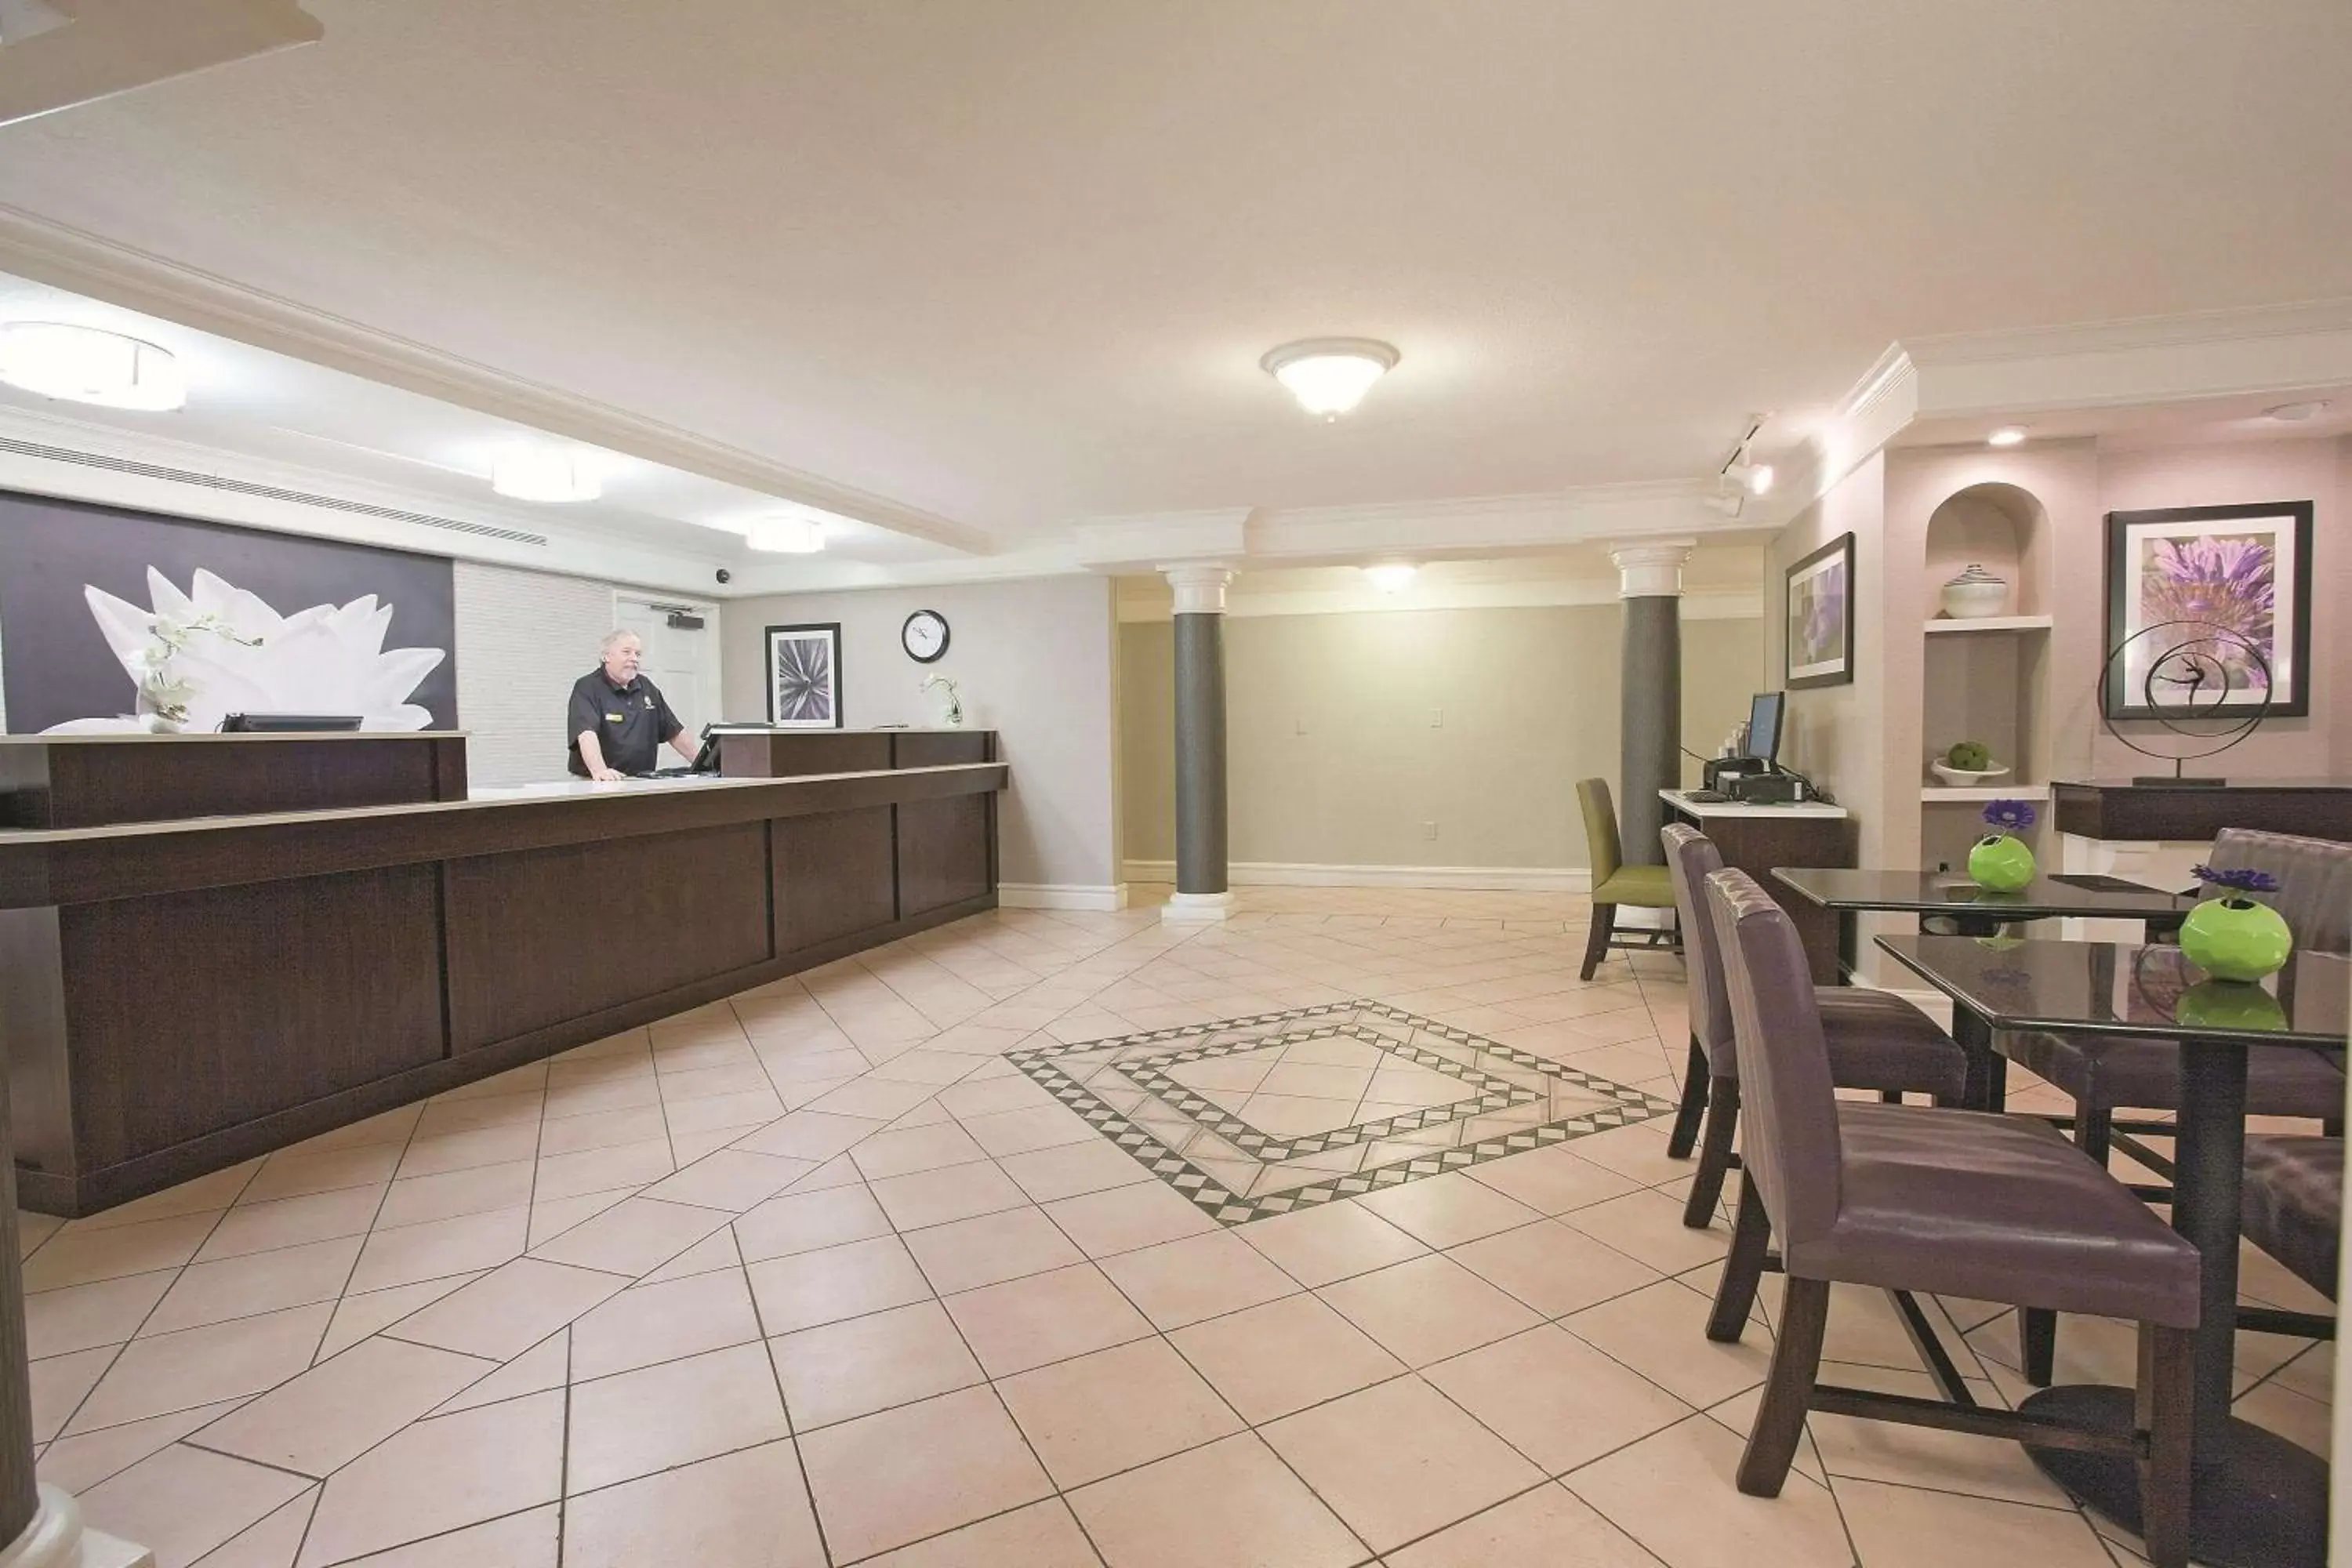 Lobby or reception in La Quinta Inn by Wyndham Salt Lake City Midvale